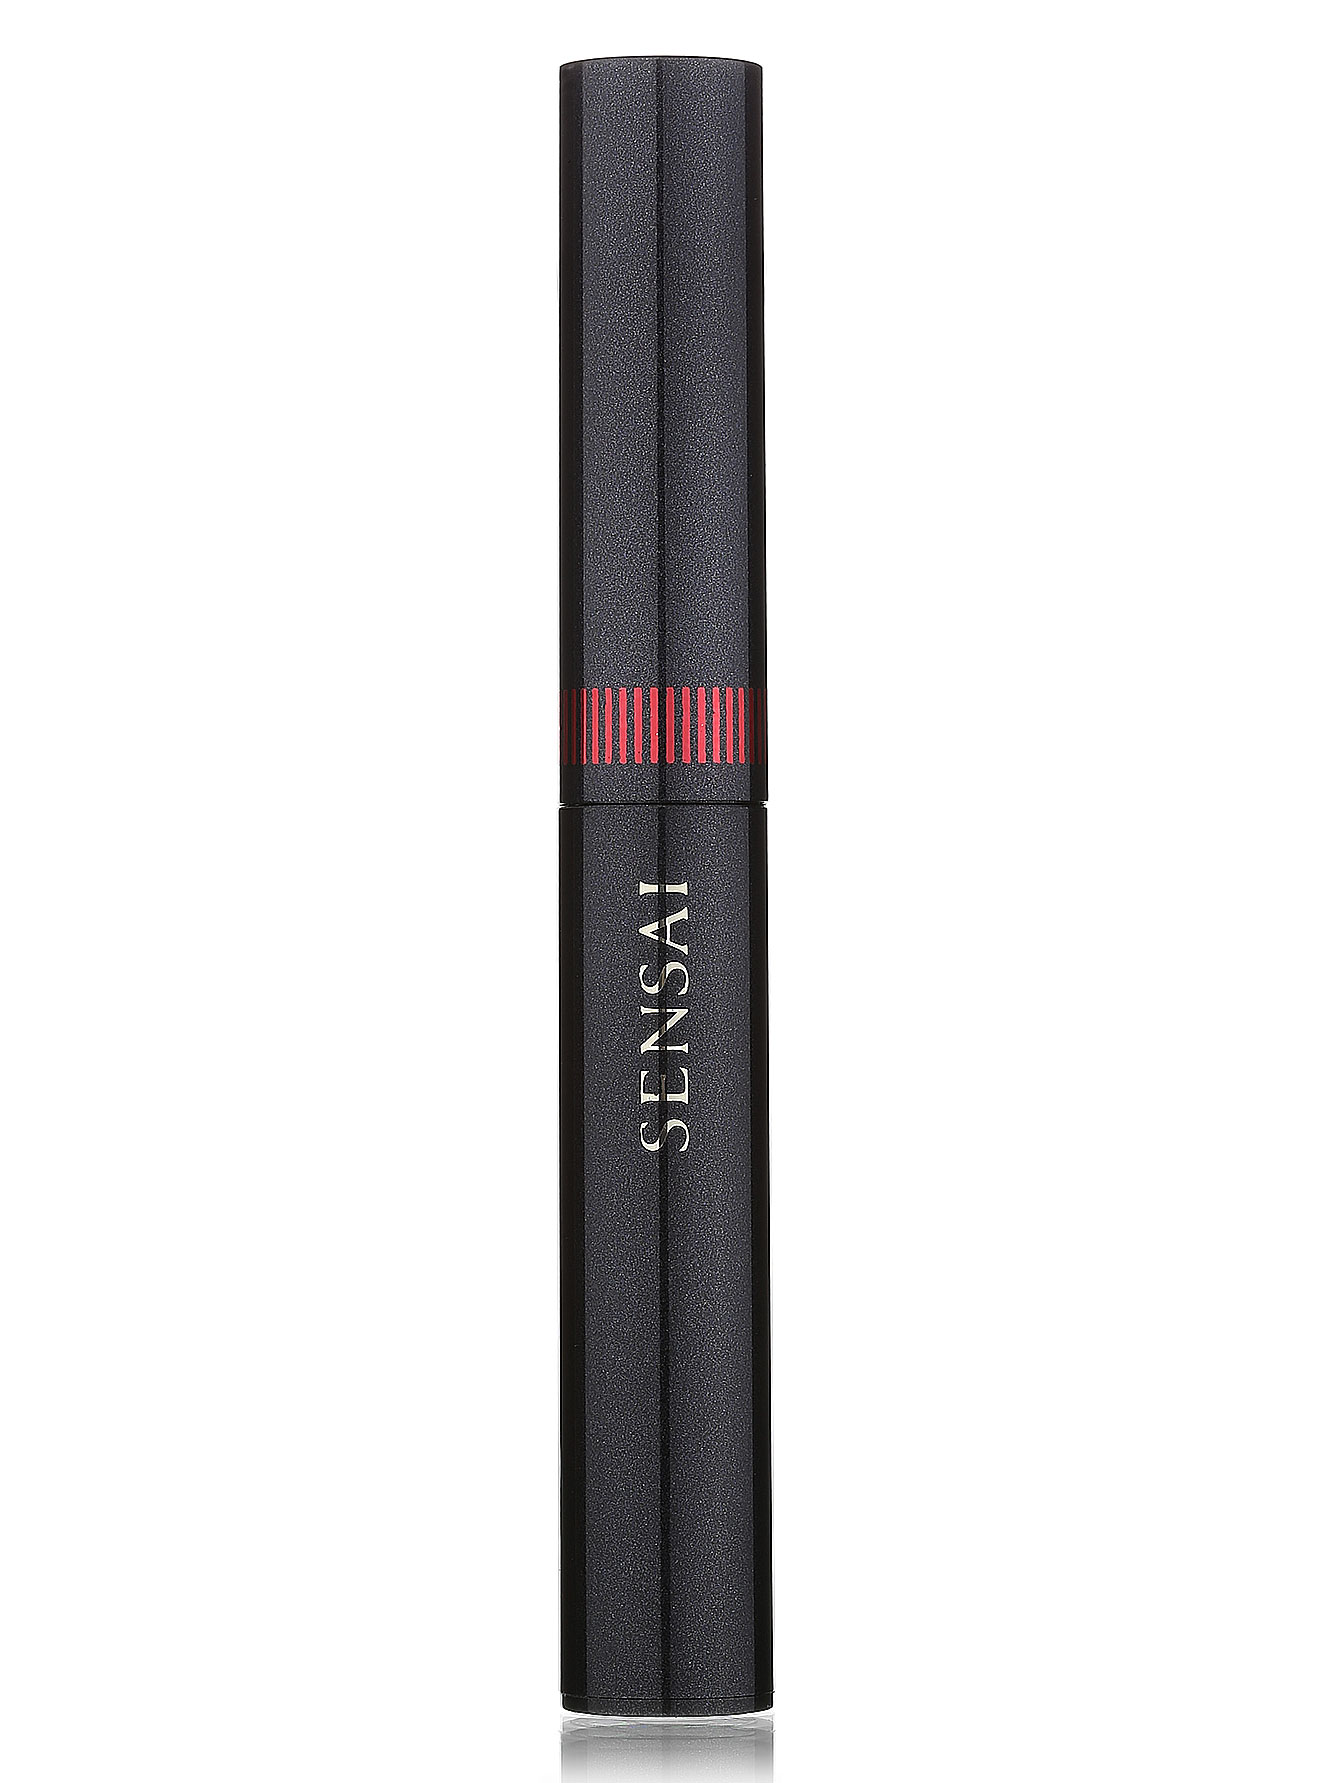 Помада-карандаш для губ - №02, Sensai Silky Design - Общий вид